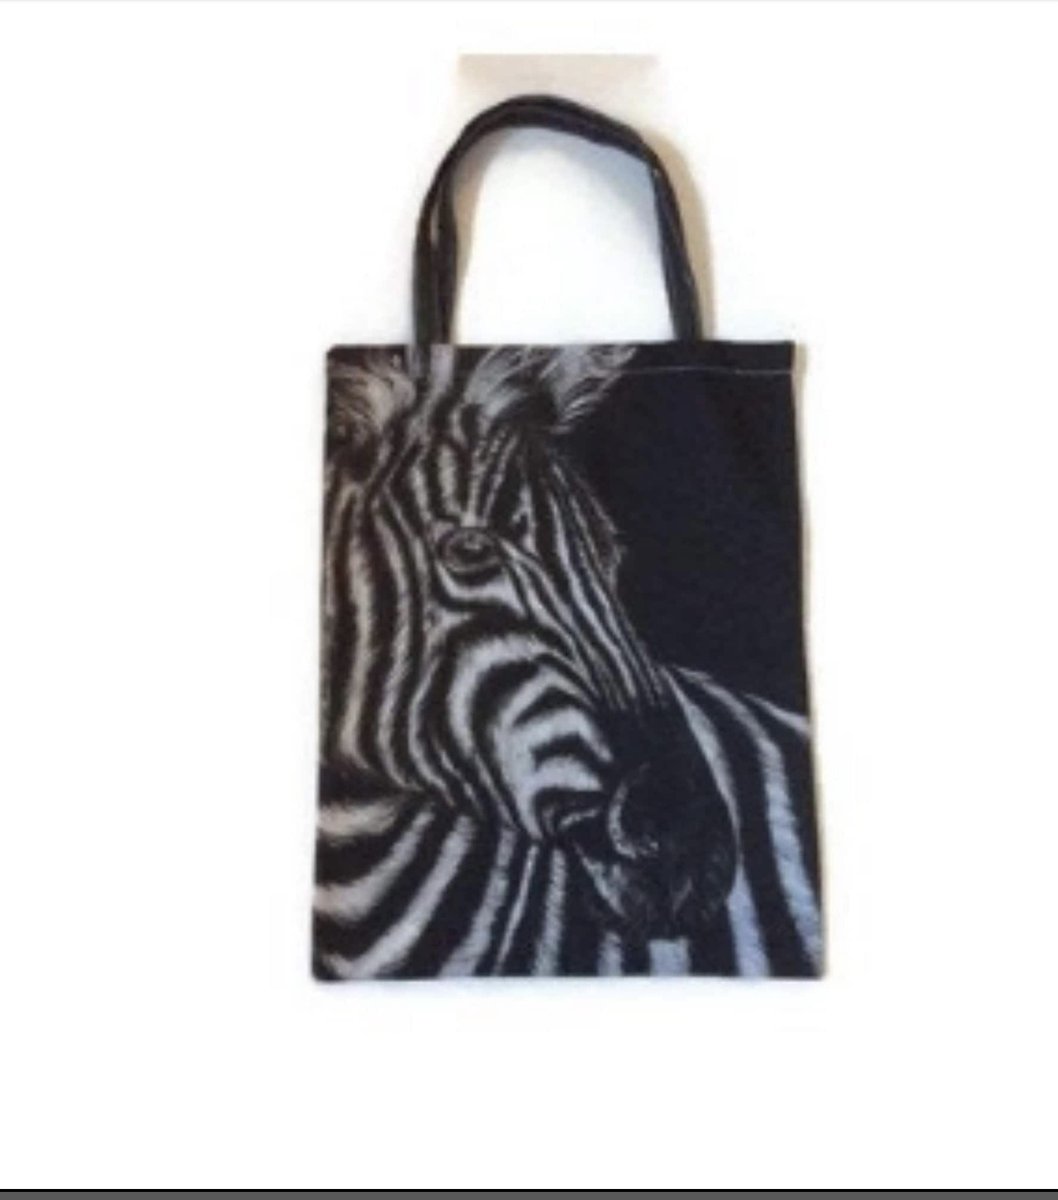 Another Zebra gift idea! artbythree.etsy.com/listing/647742… #MHHSBD #MondayMorning #EarlyRisersClub #EarlyBiz #giftideas #formum #elevenseshour #ukmakers